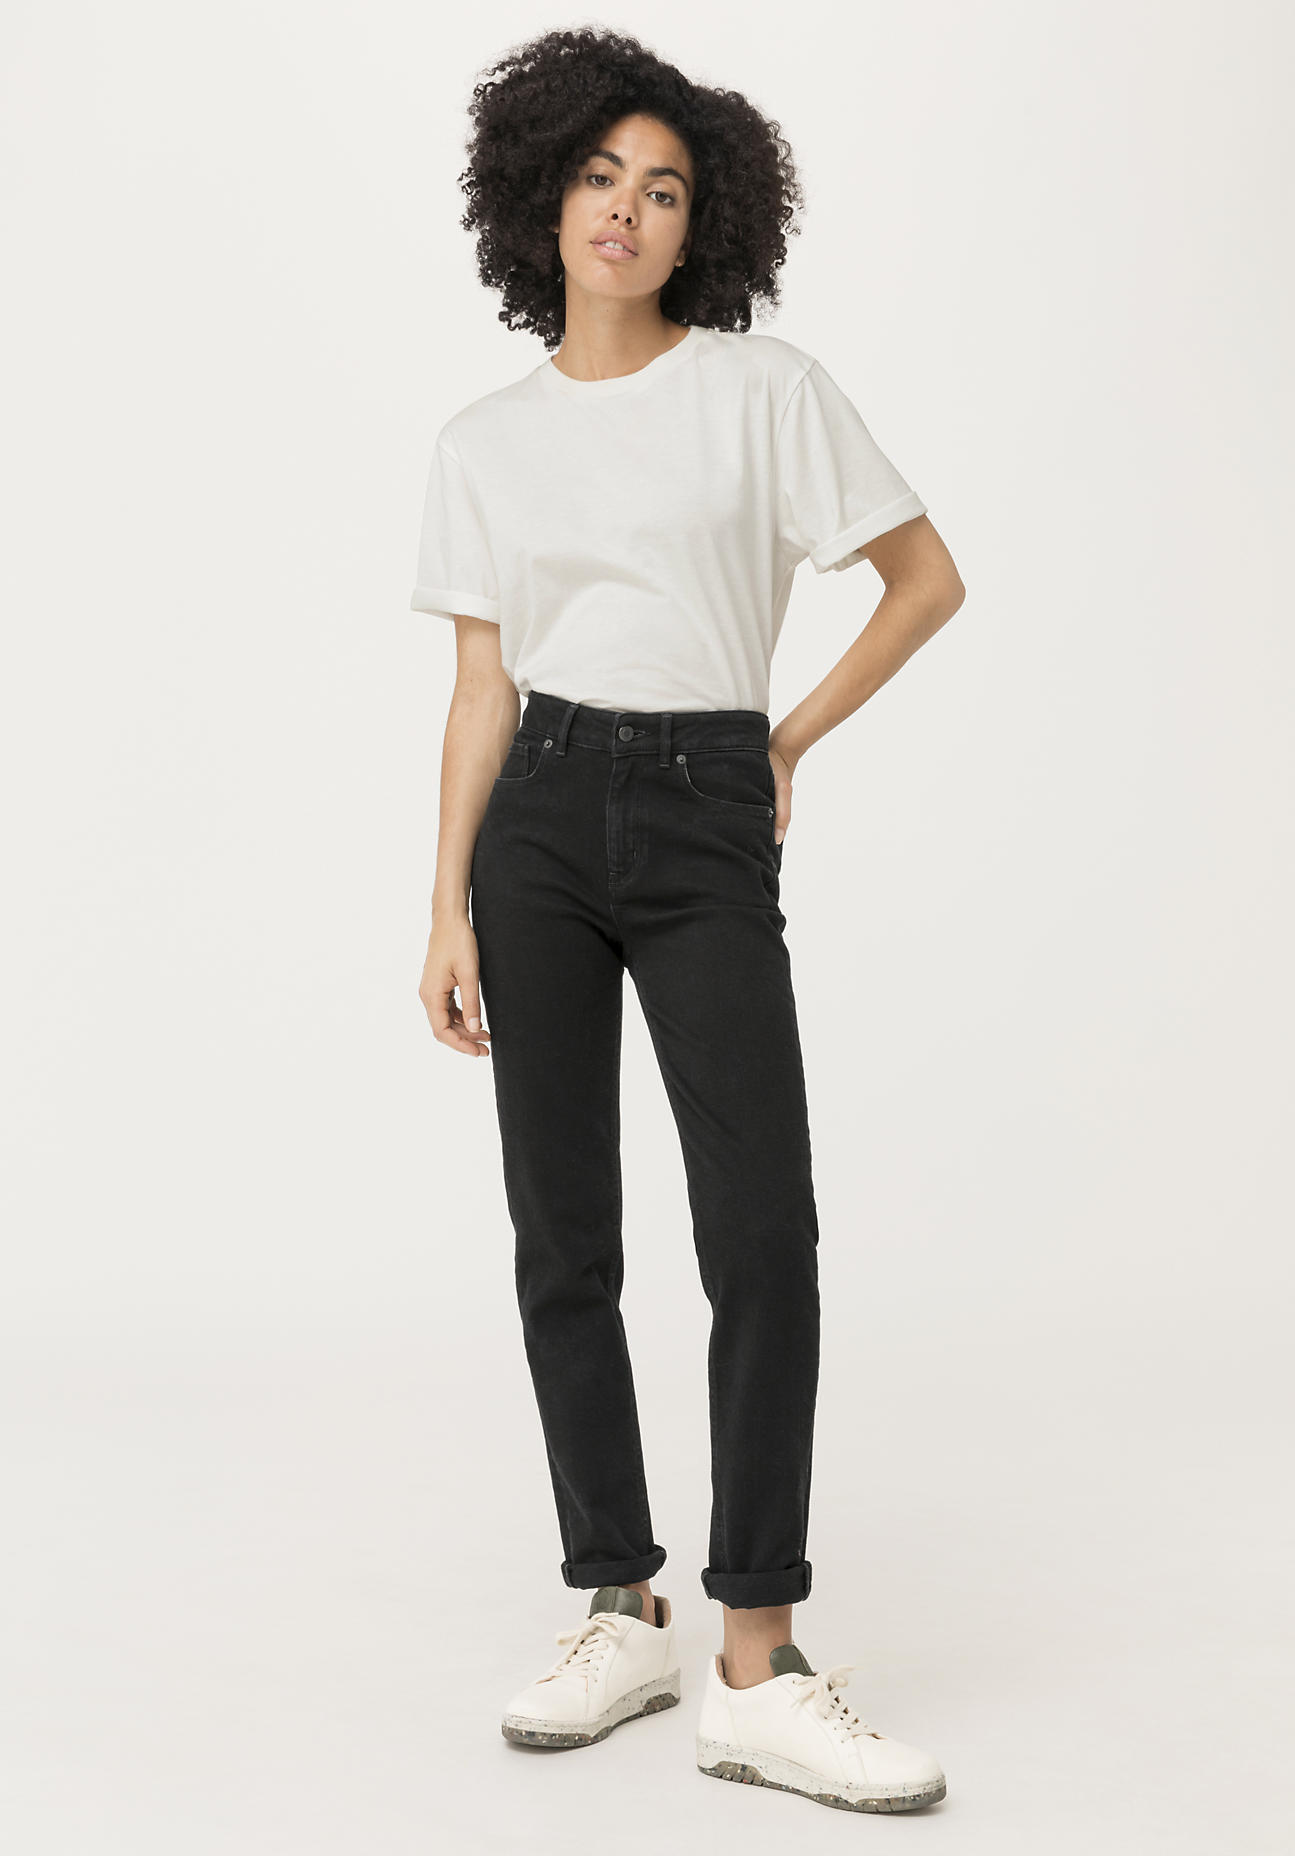 hessnatur Damen Jeans High Rise aus COREVA™ Bio-Denim - schwarz - Größe 27/30